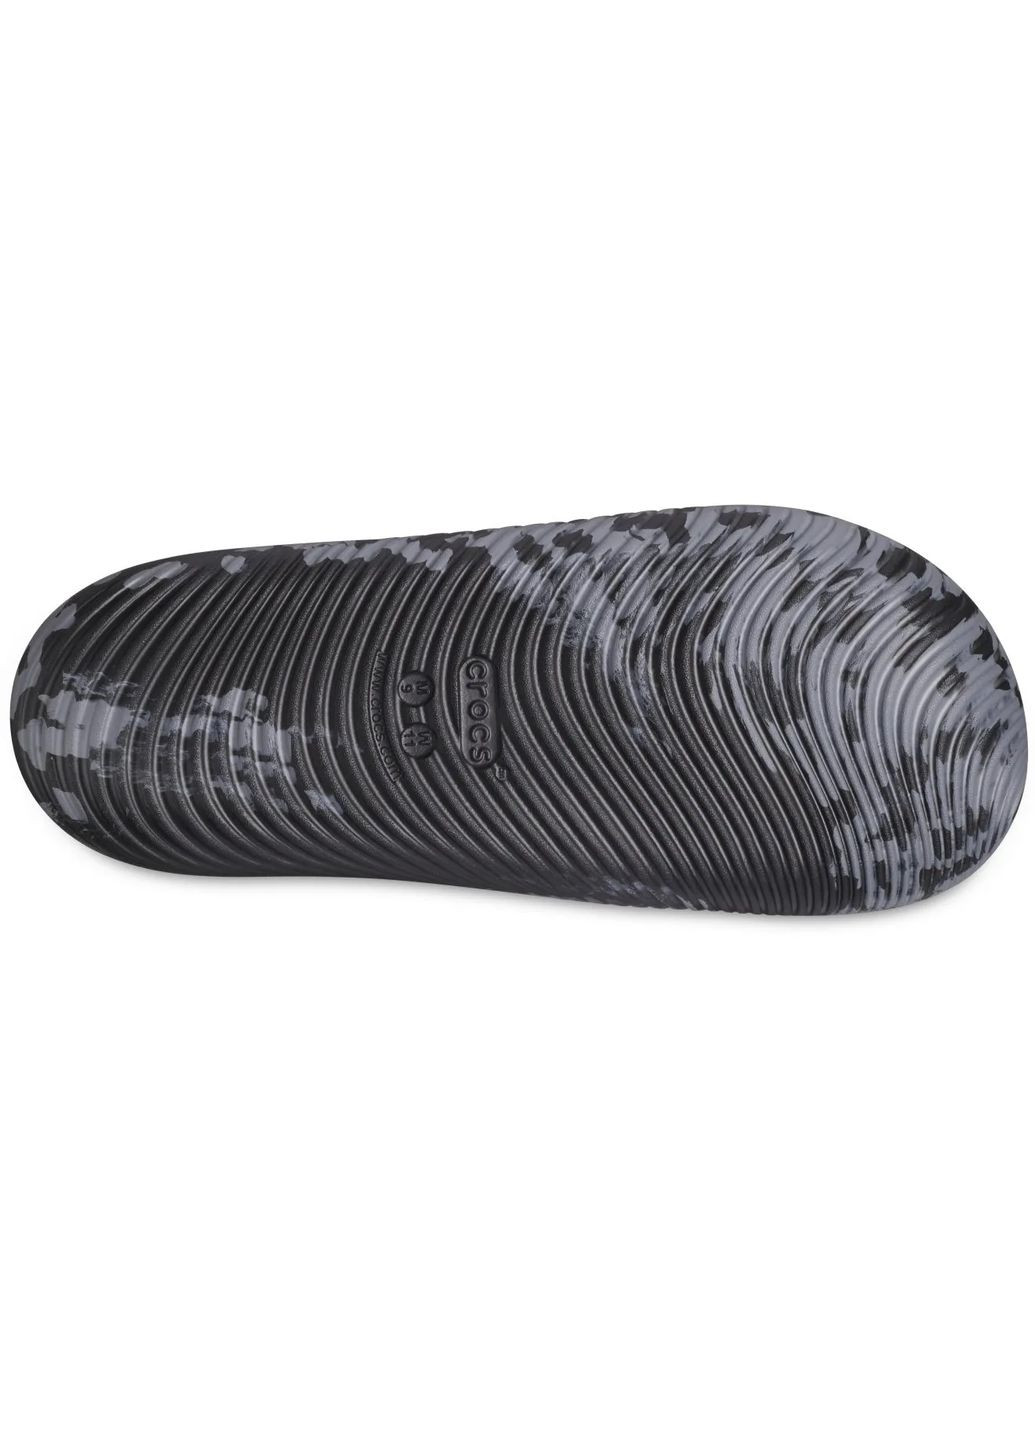 Черные шлепанцы mellow marbled slide m5w7-37-24см black/charcoal 208579 Crocs